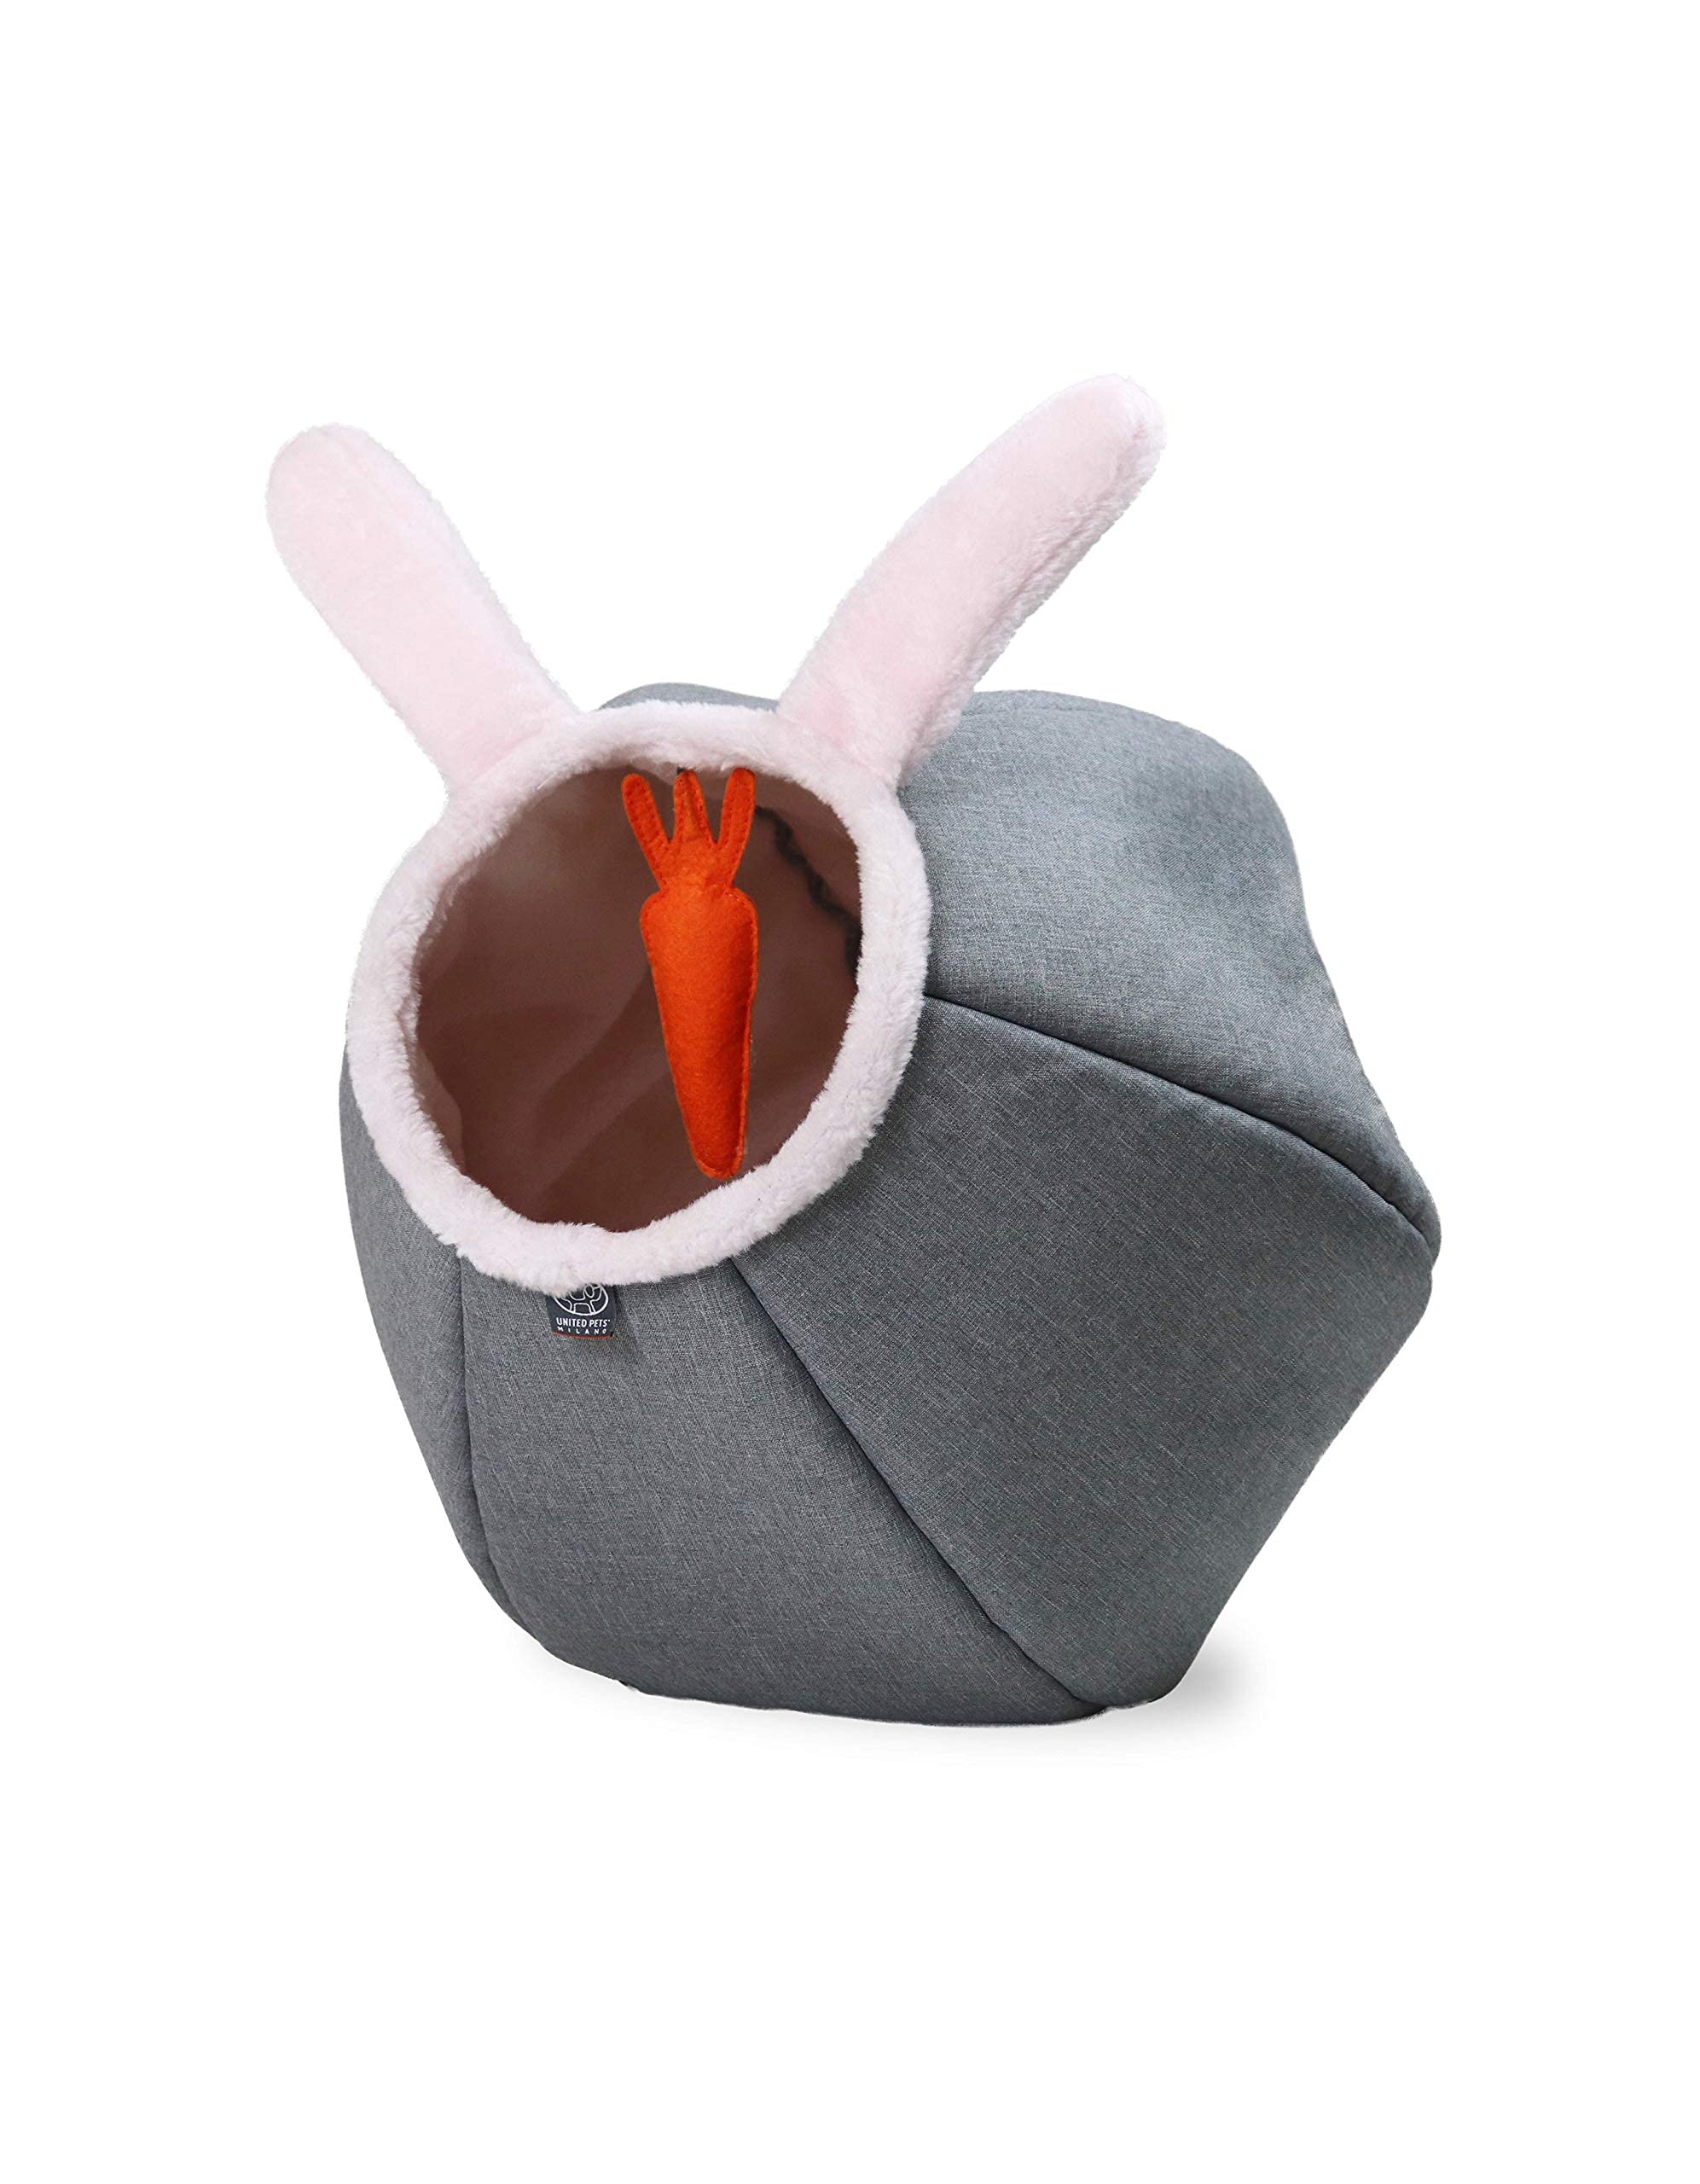 United Pets Cat Cave Bunny mit Spielball, Design, lustiges Karotten Plüschspiel, weiches Bett für Katzen, Grau